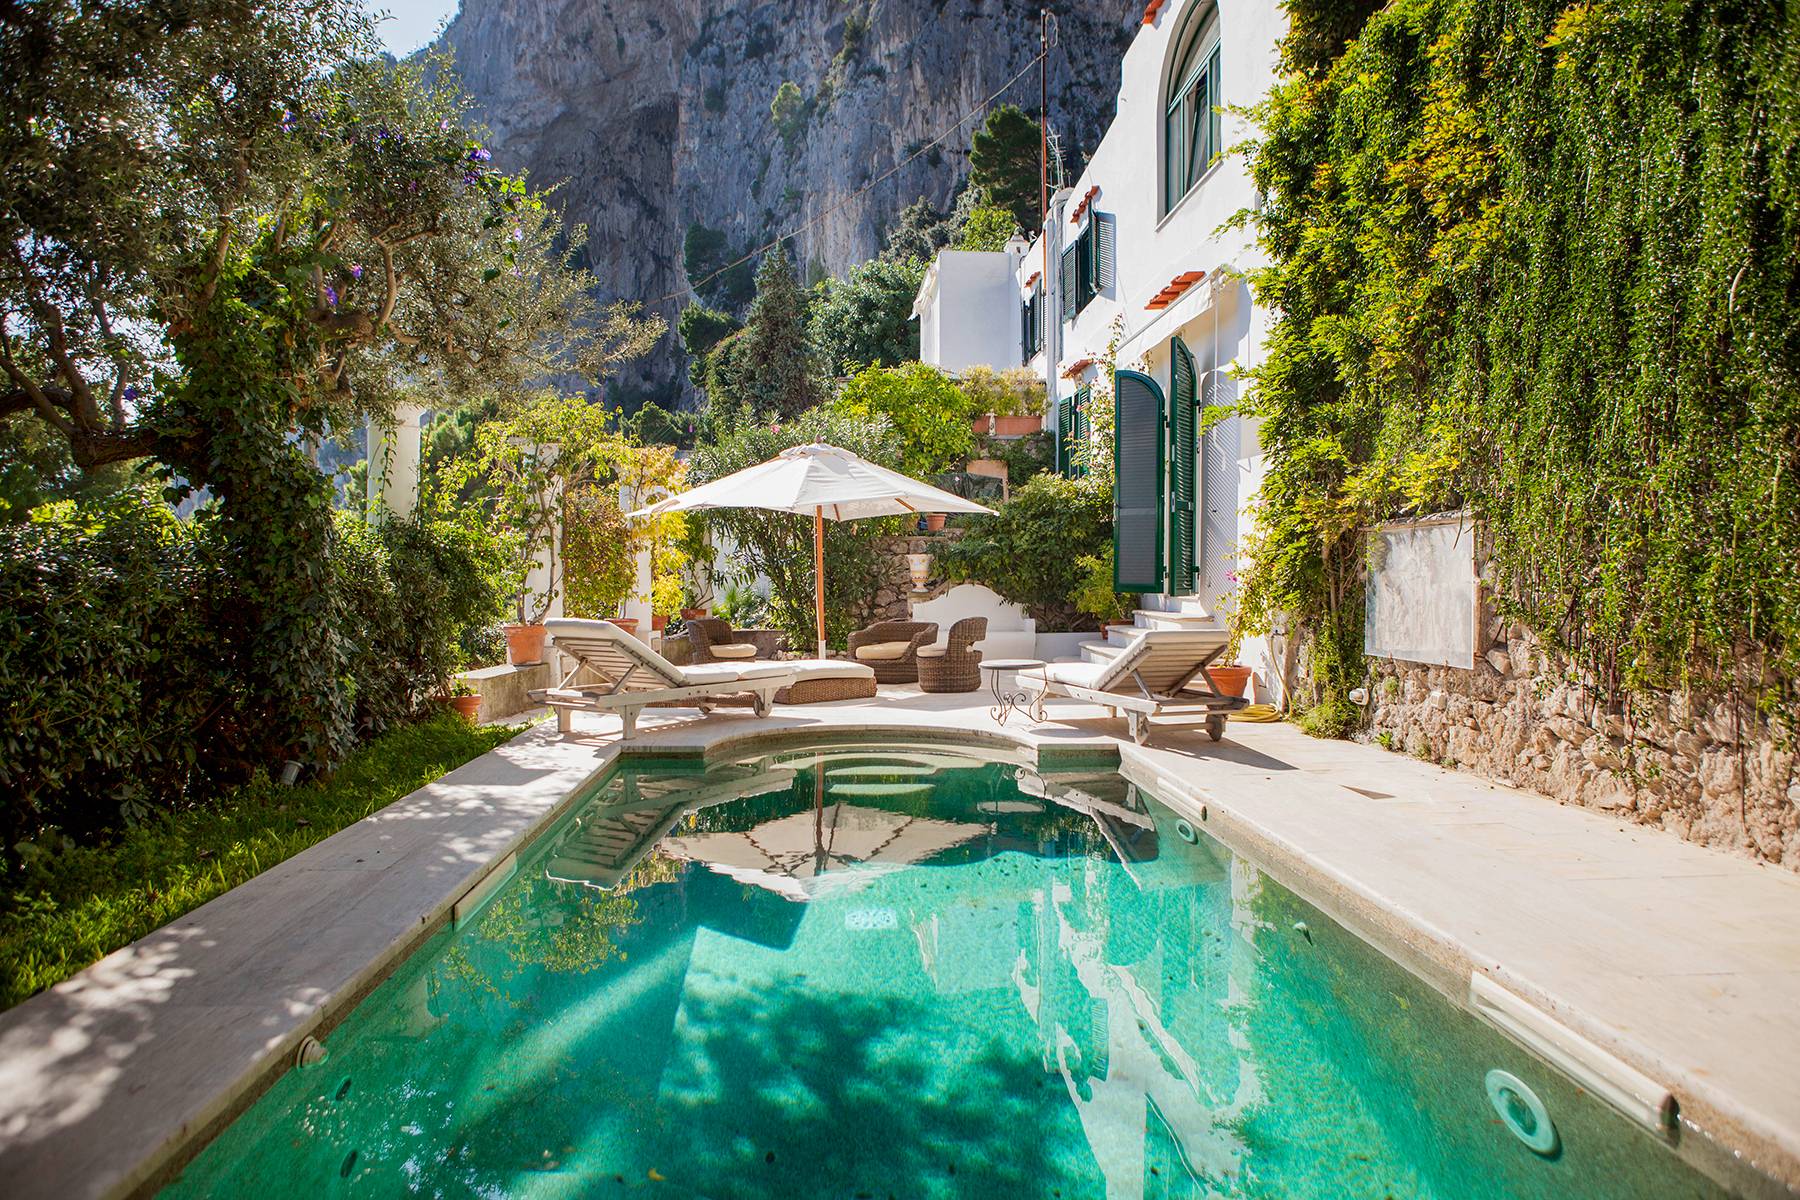 Magnificent villa overlooking the Faraglioni rocks